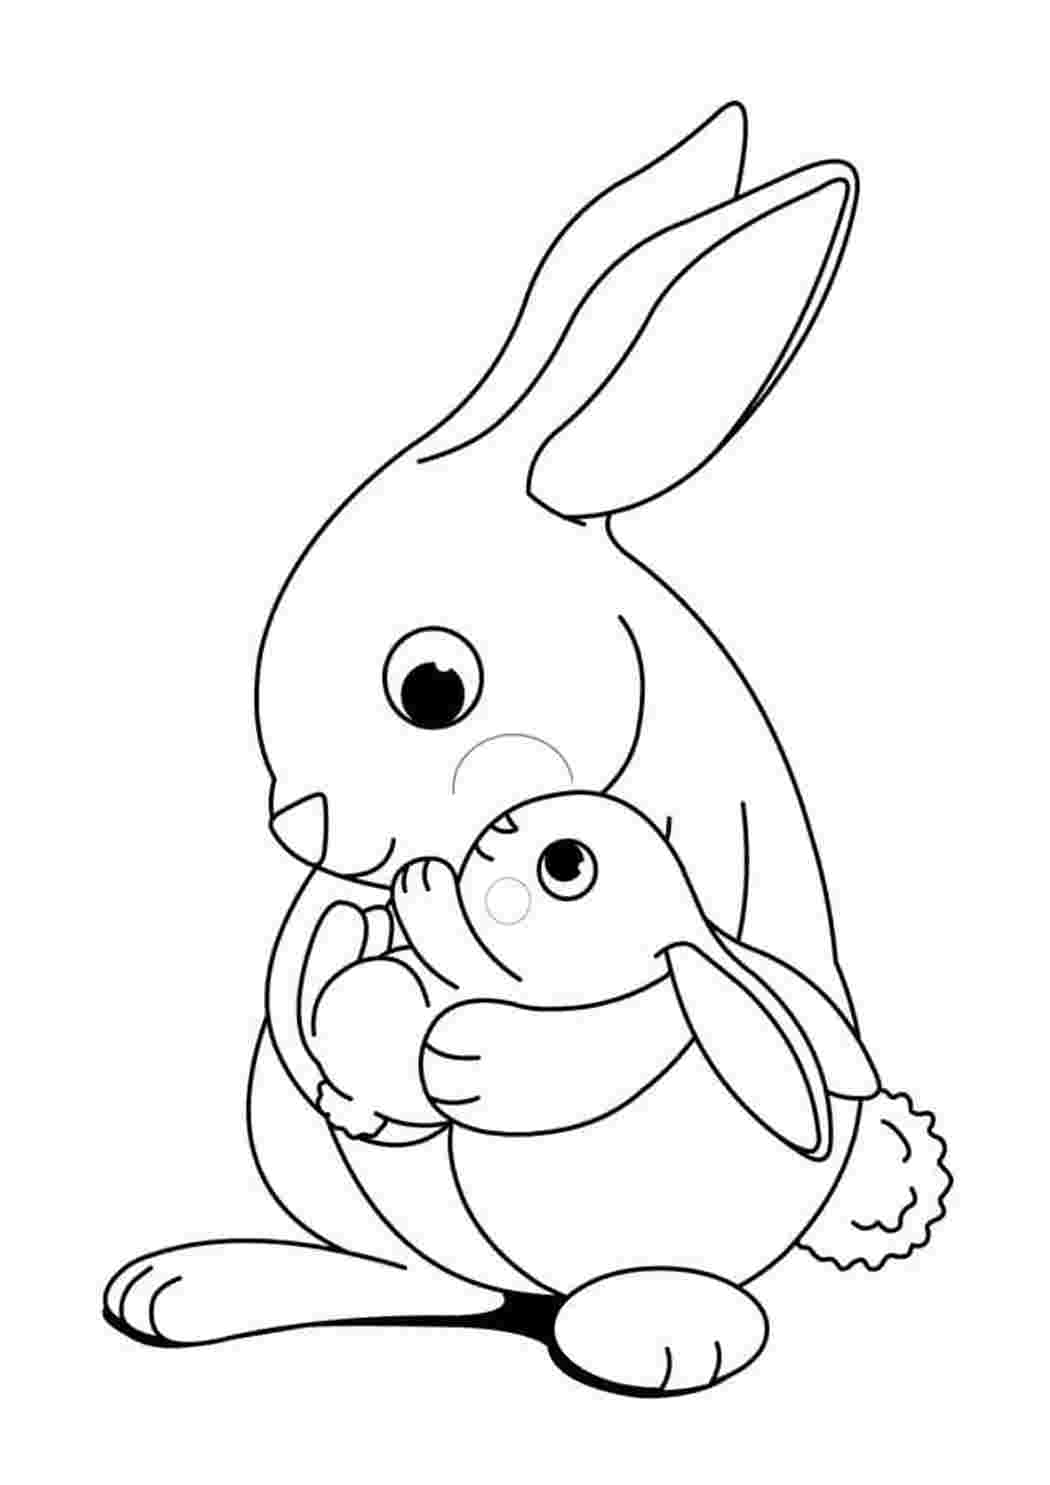 Раскраска кролик - распечатать картинки для детей